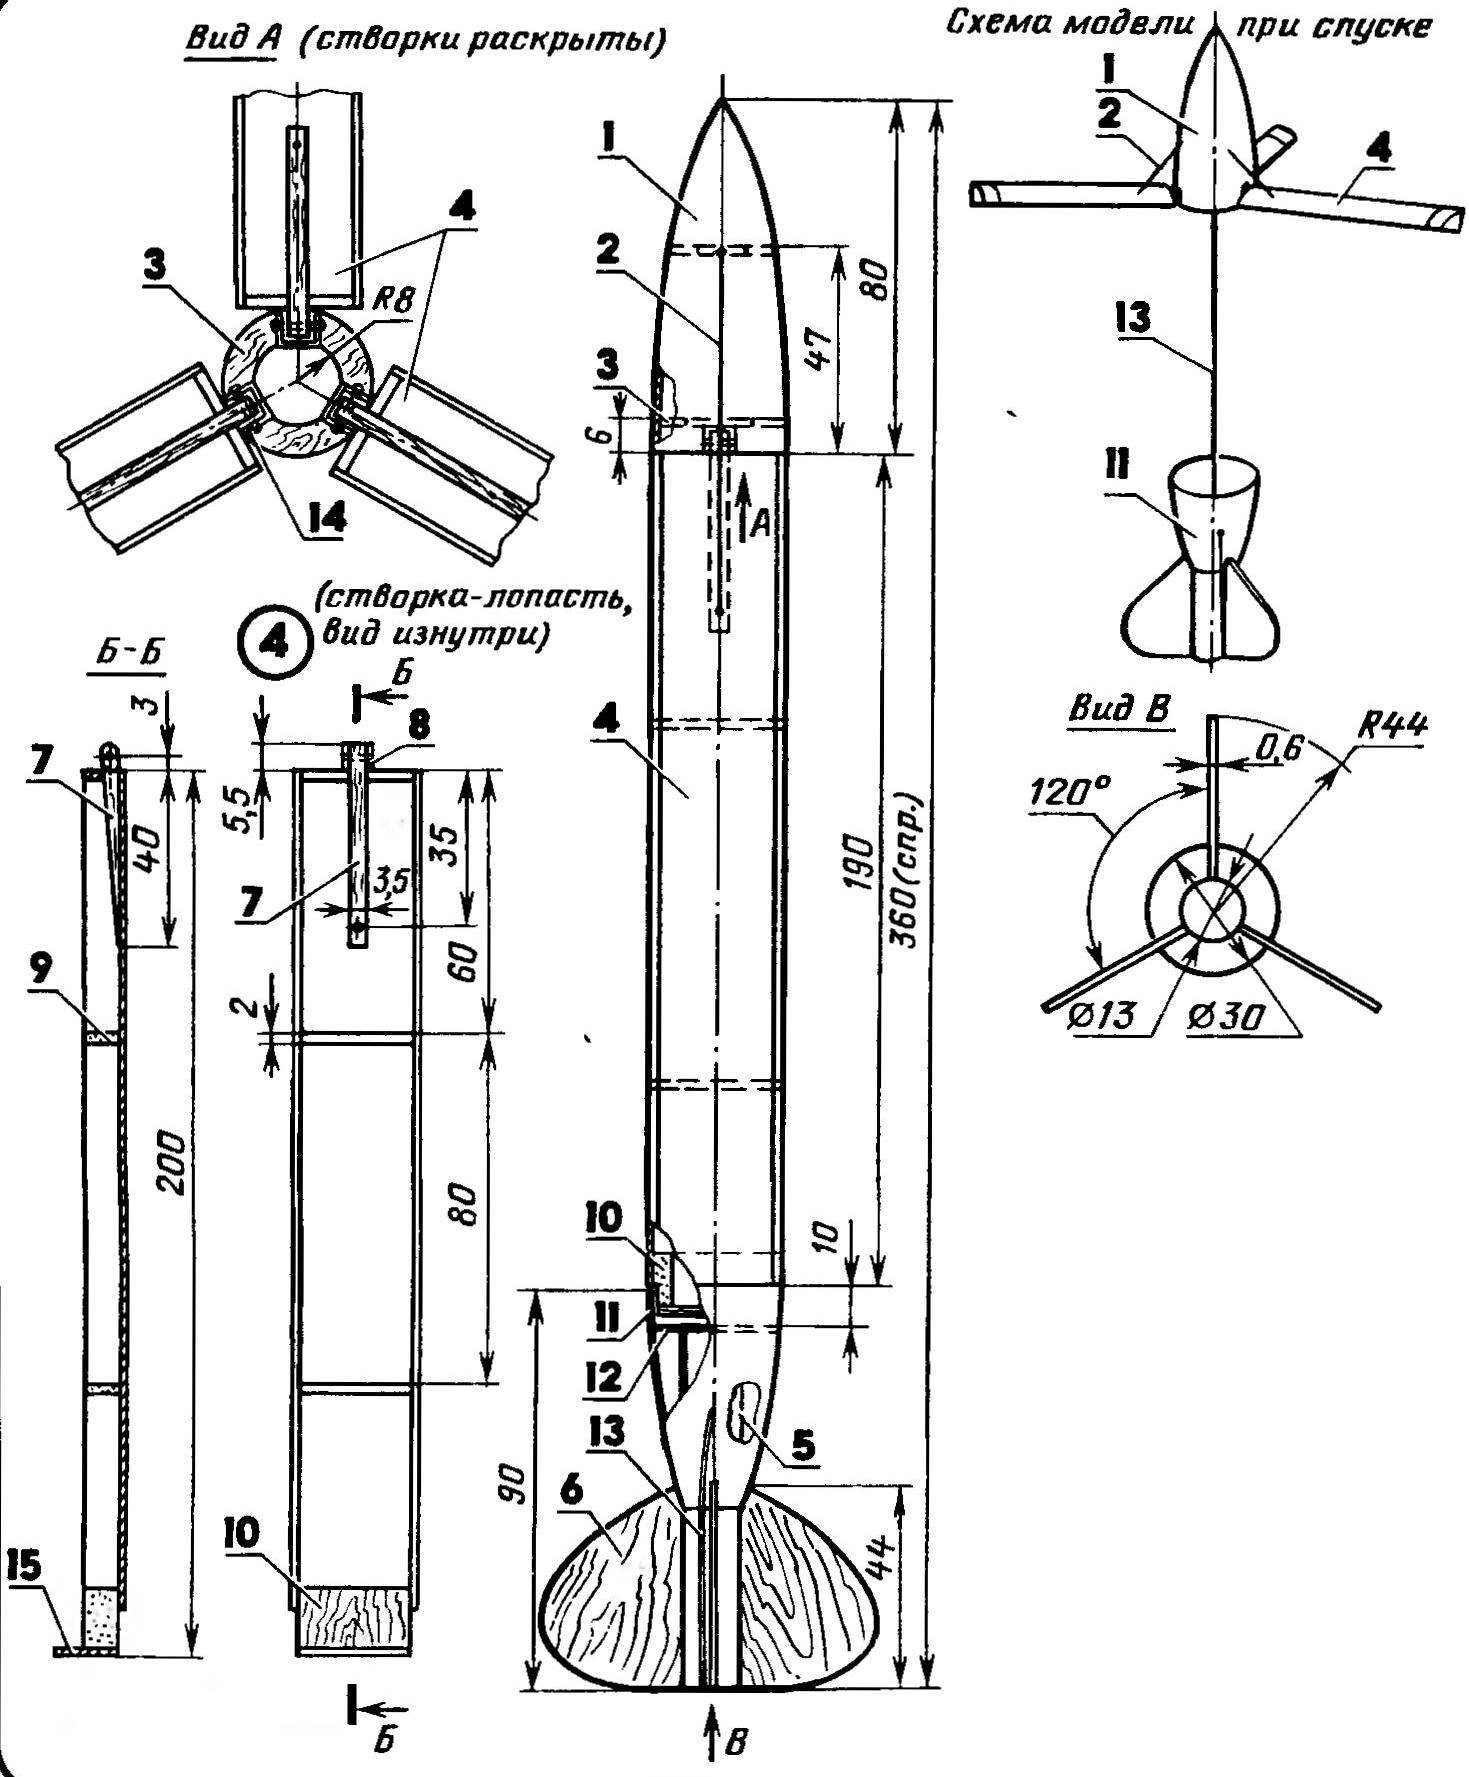 Model rocket rotachute class 89A